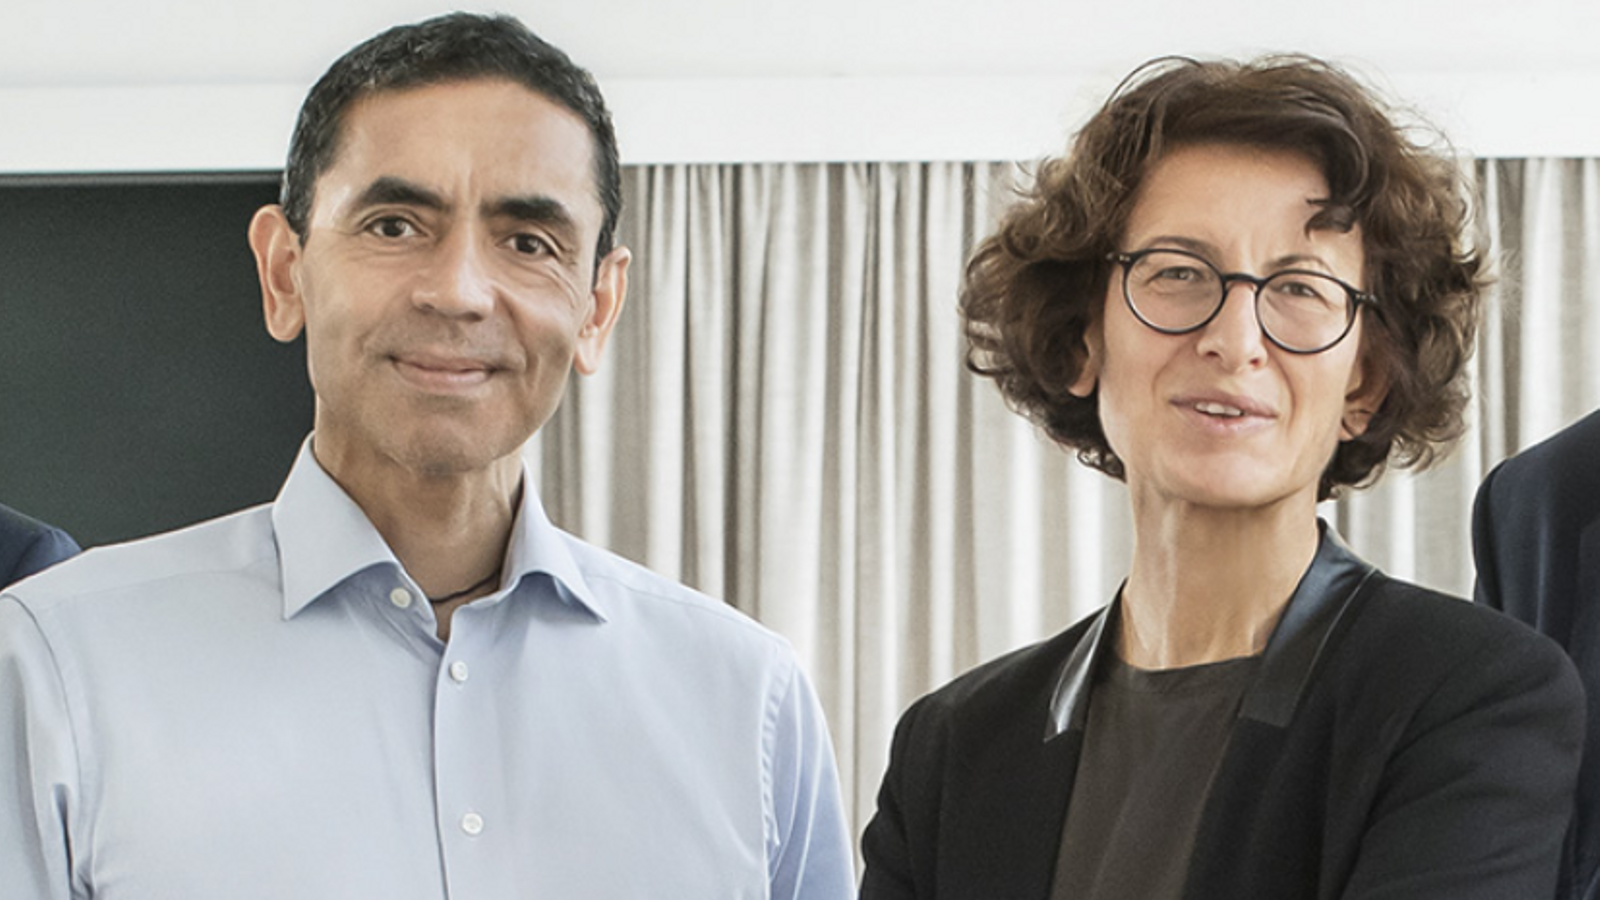 Ugur Sahin y Özlem Türeci, los padres turco-alemanes de la vacuna más  esperanzadora contra el covid-19